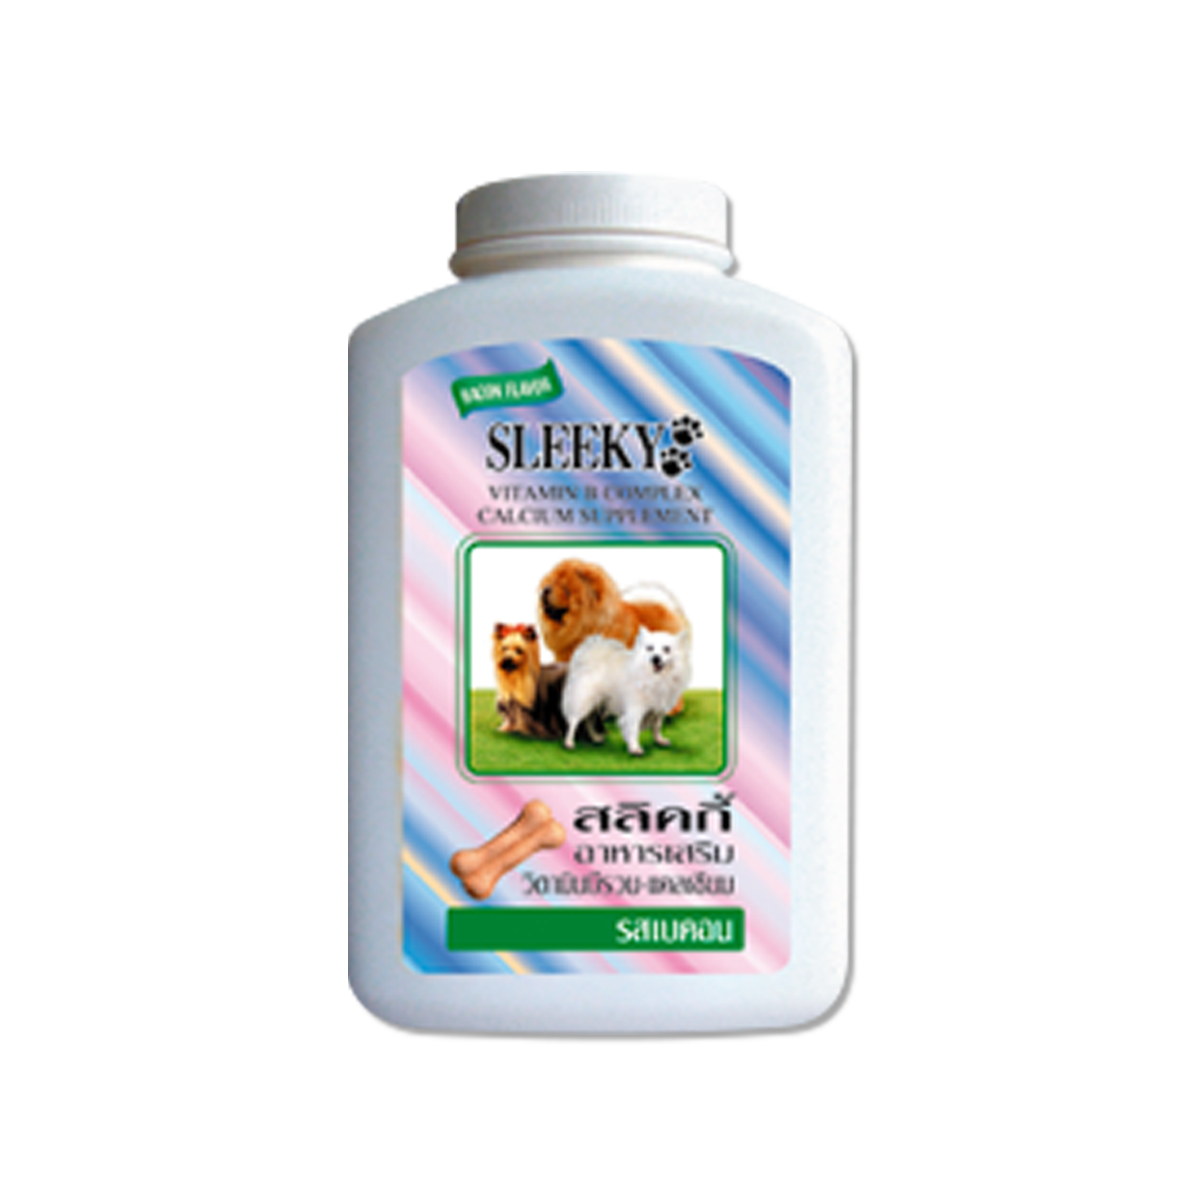 SLEEKY Vitamin B Complex & Calcium Supplement  Bacon Flavor สลิคกี้ อาหารเสริมวิตามินบีรวม บำรุงร่างกายสุนัข รสเบคอน ขนาด 630 กรัม